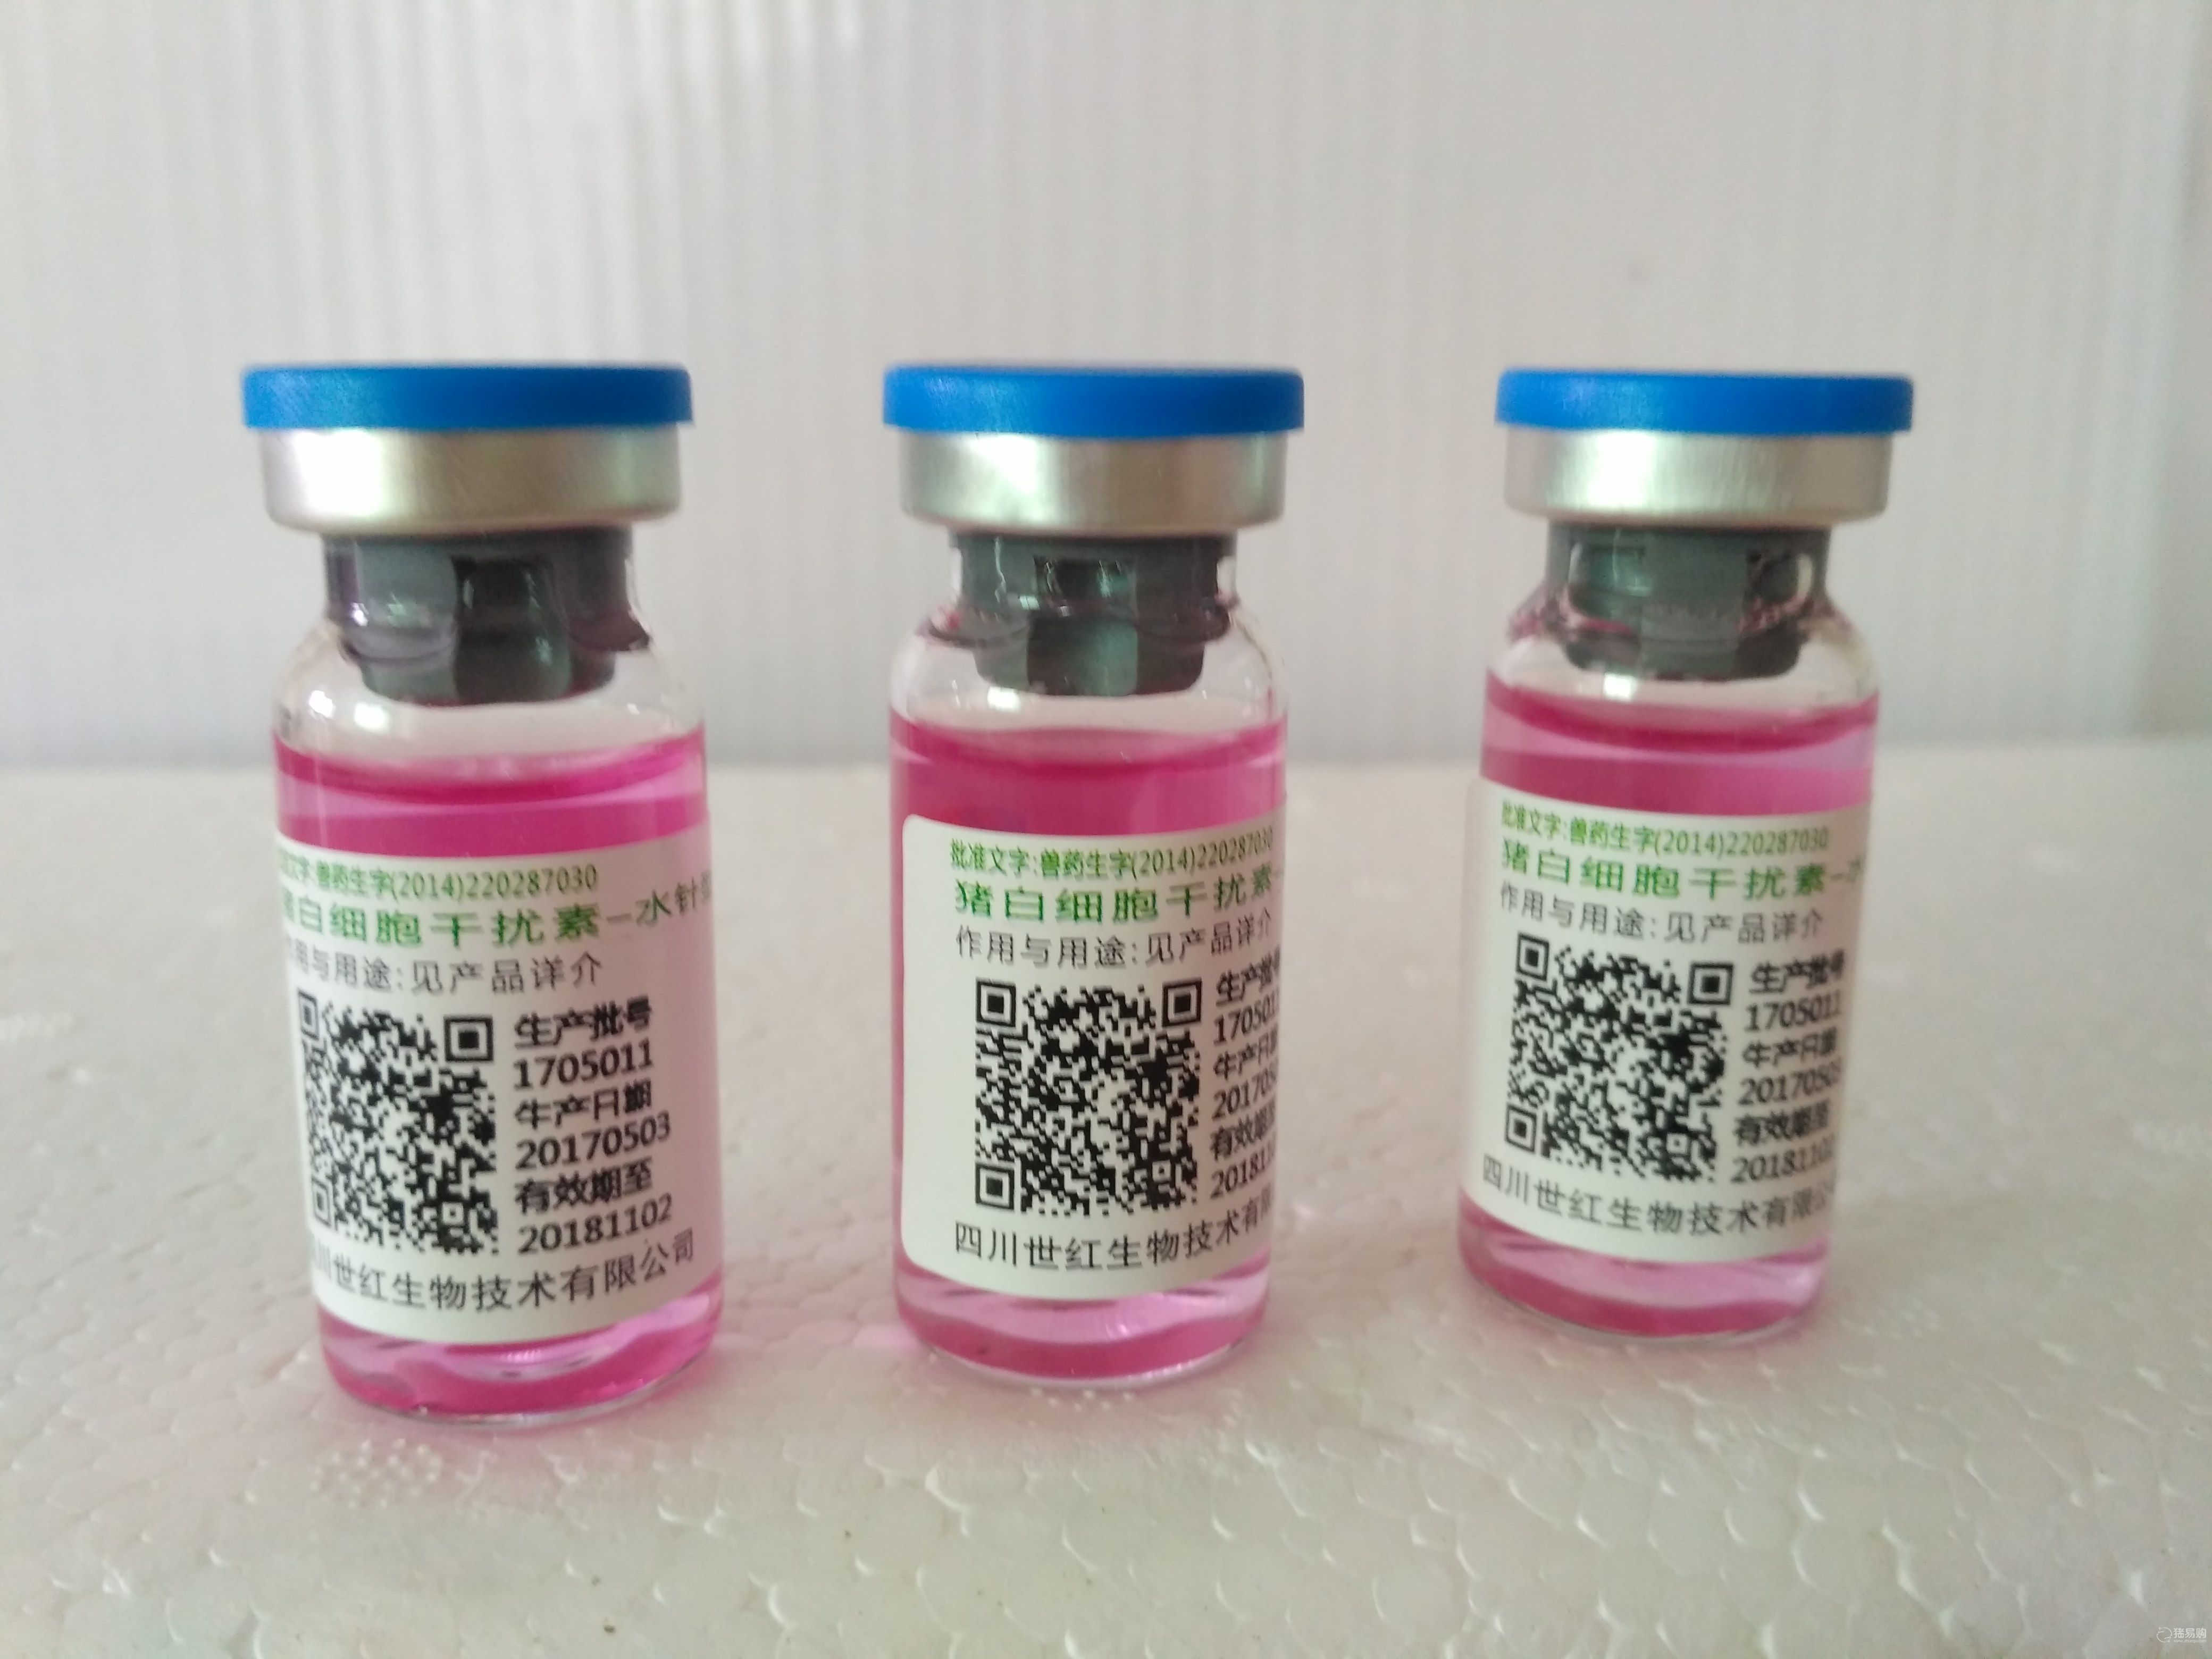 【世红】猪白细胞干扰素（水针）具有广谱抗病毒作用，用于防治猪流行性腹泻等病毒性疾病。